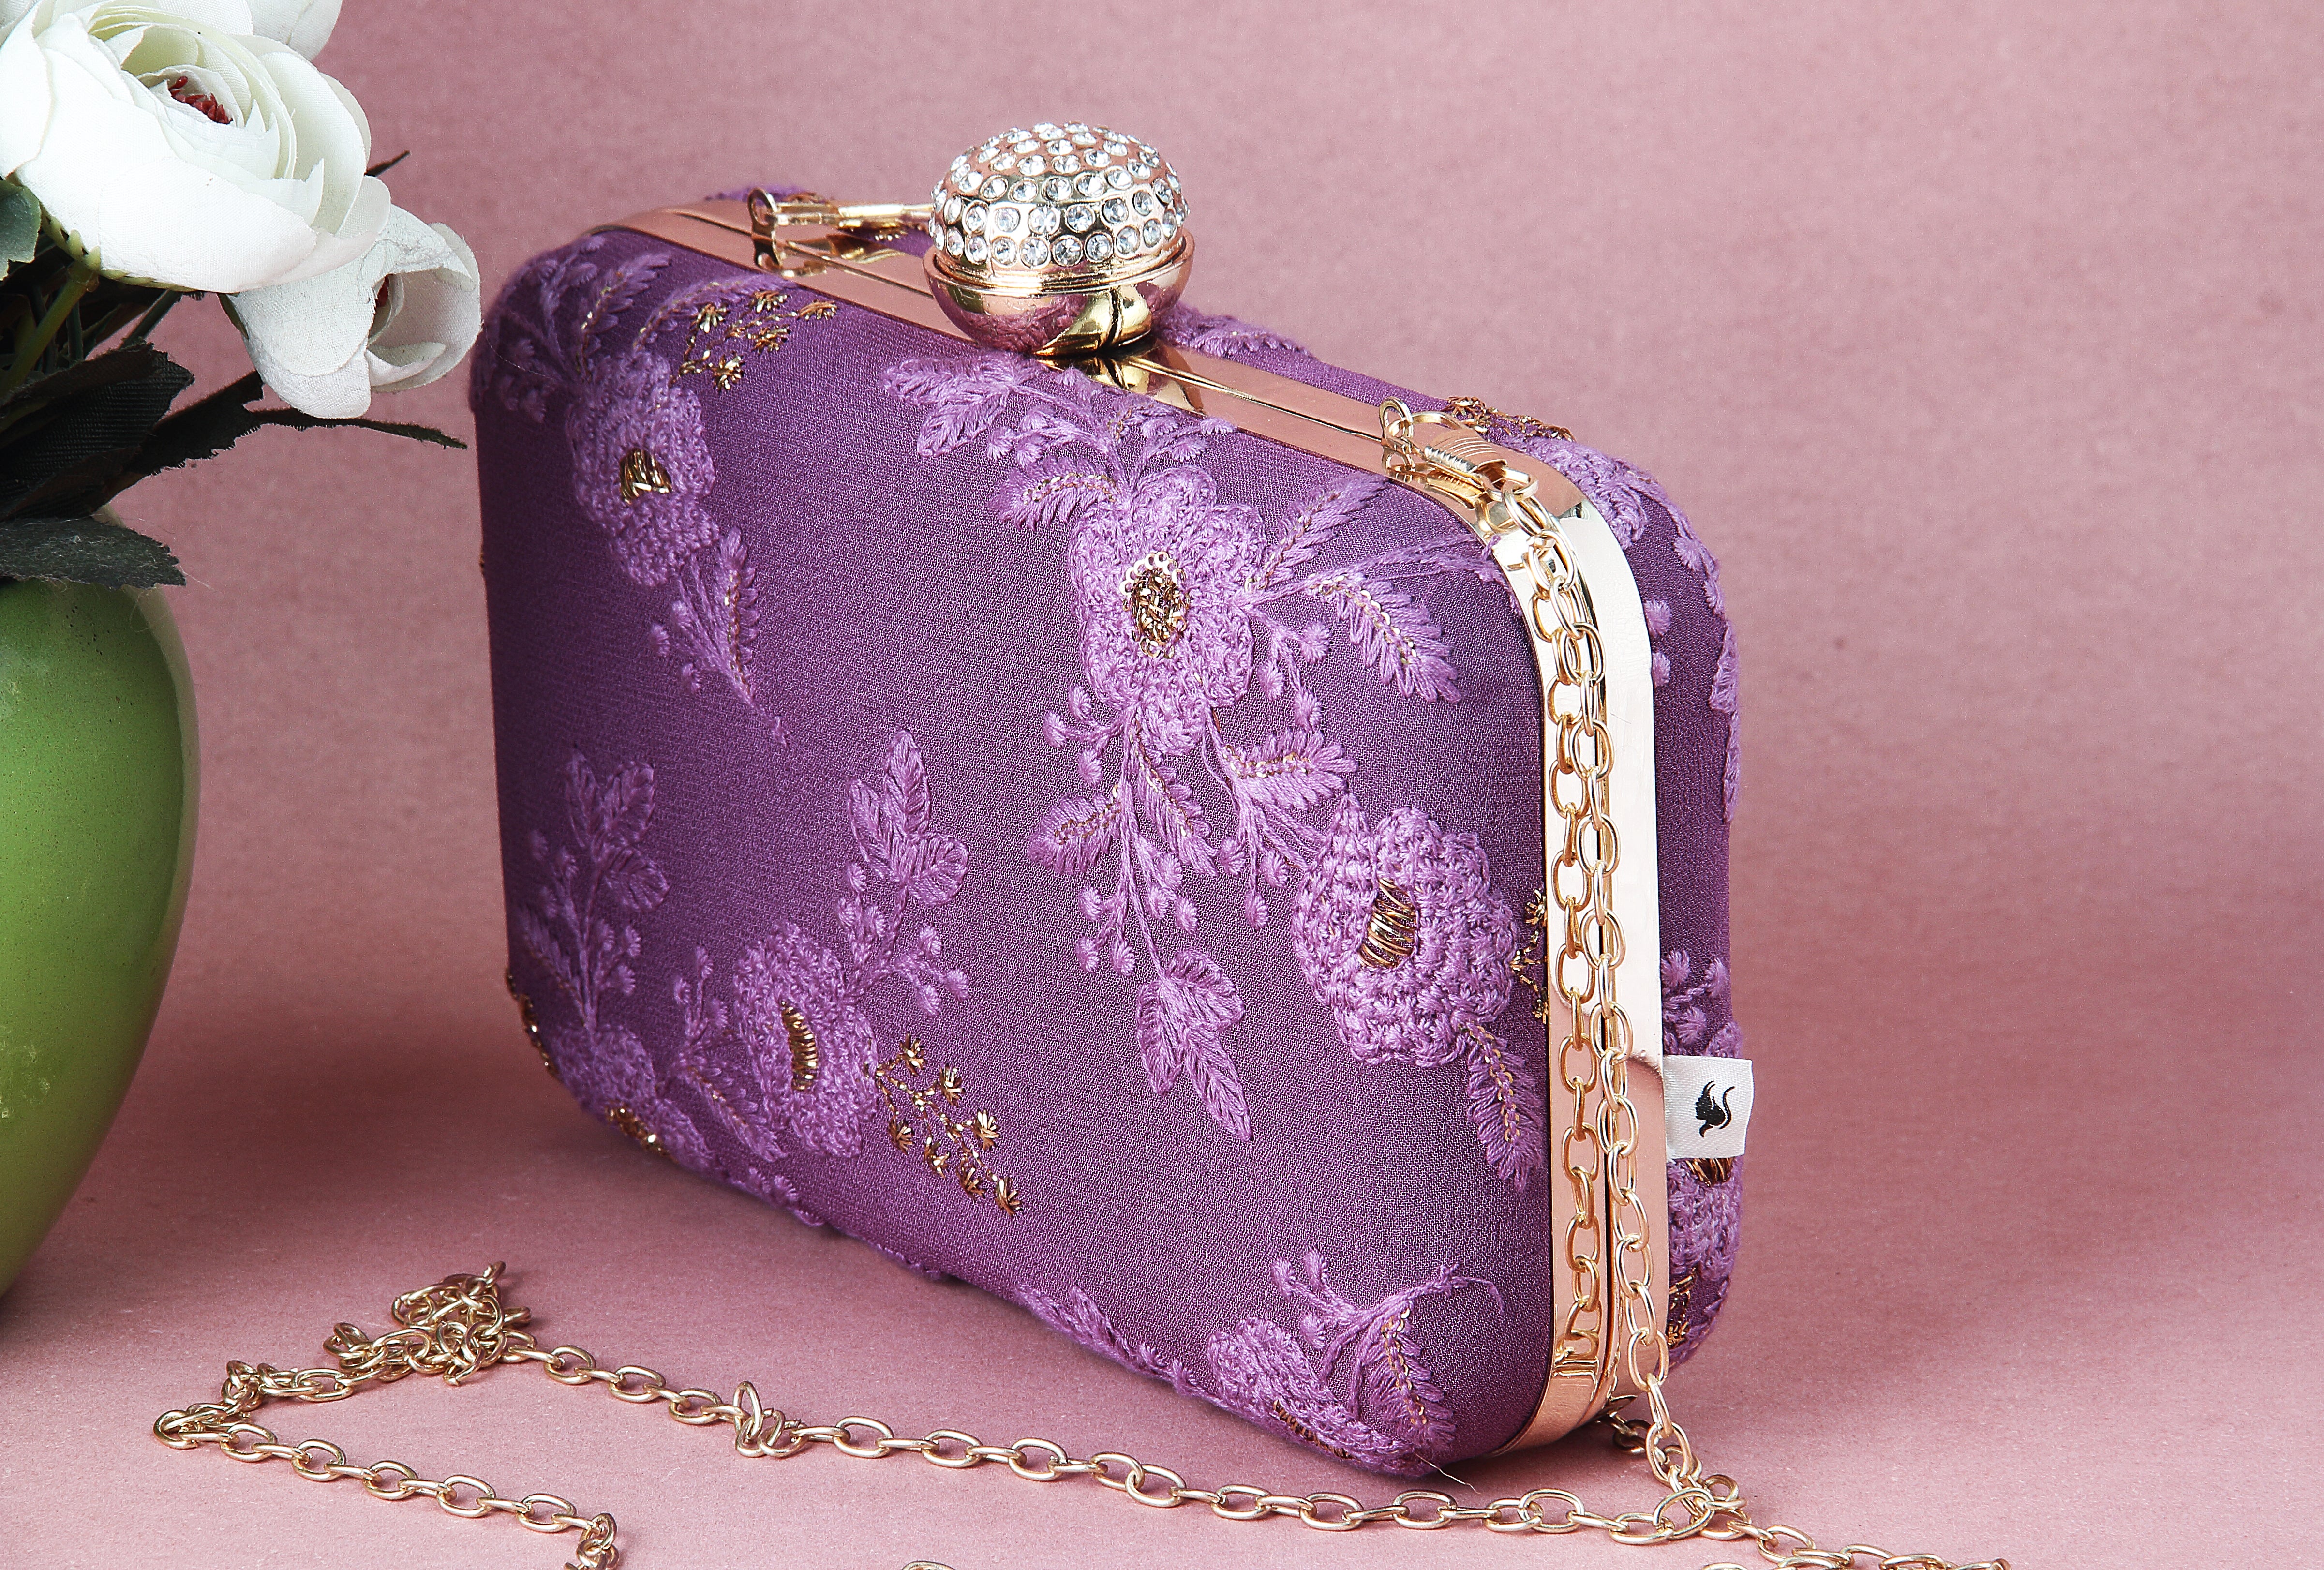 Saadgi embroidered designer lavender clutch bag with sling